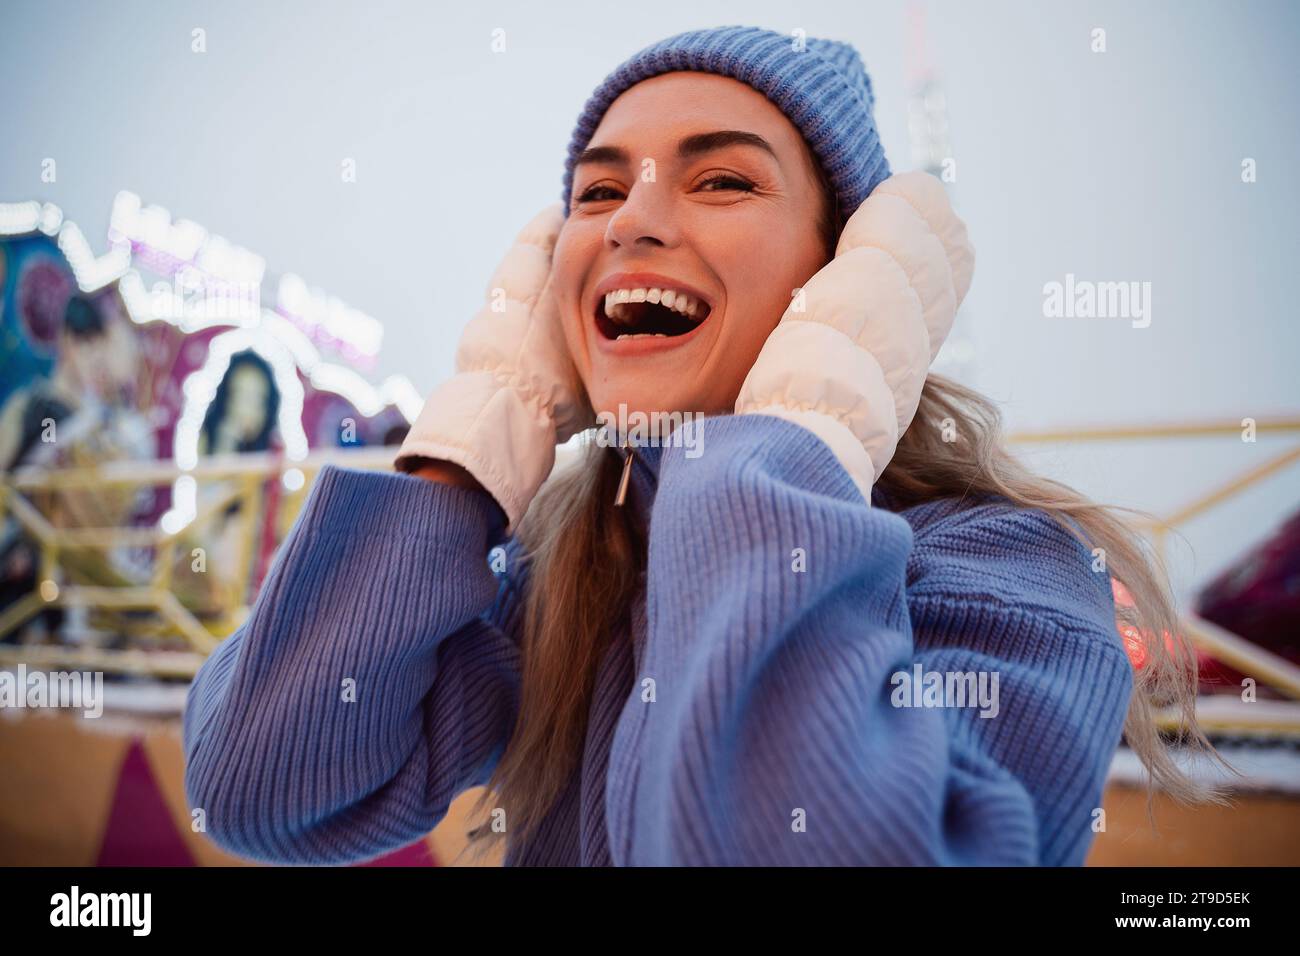 Una donna allegra ed elegante, vestita con abiti caldi, si diverte in un parco divertimenti invernale innevato. Foto Stock